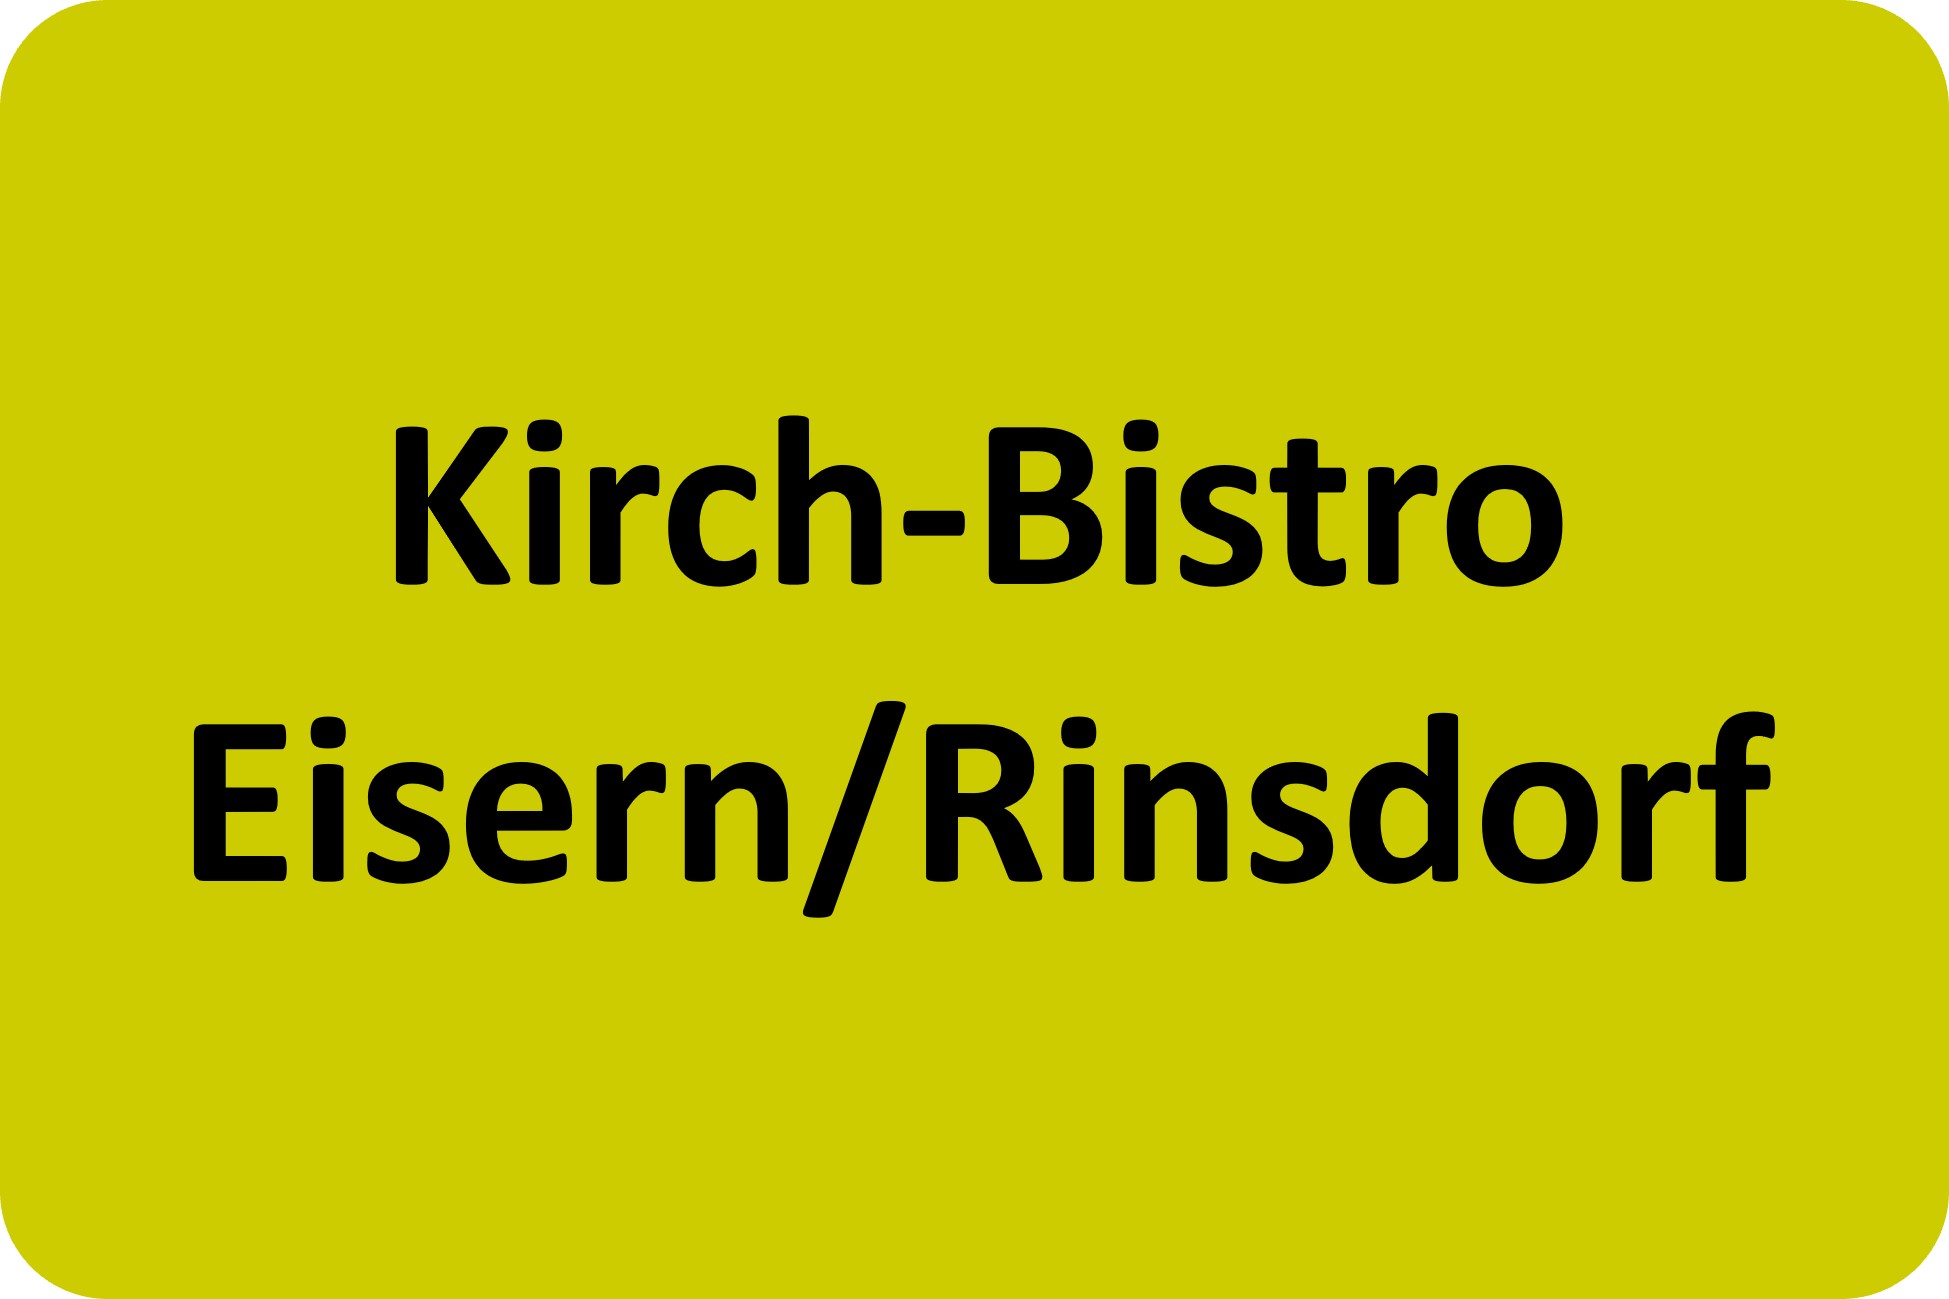 Kirch-Bistro Eisern/Rinsdorf